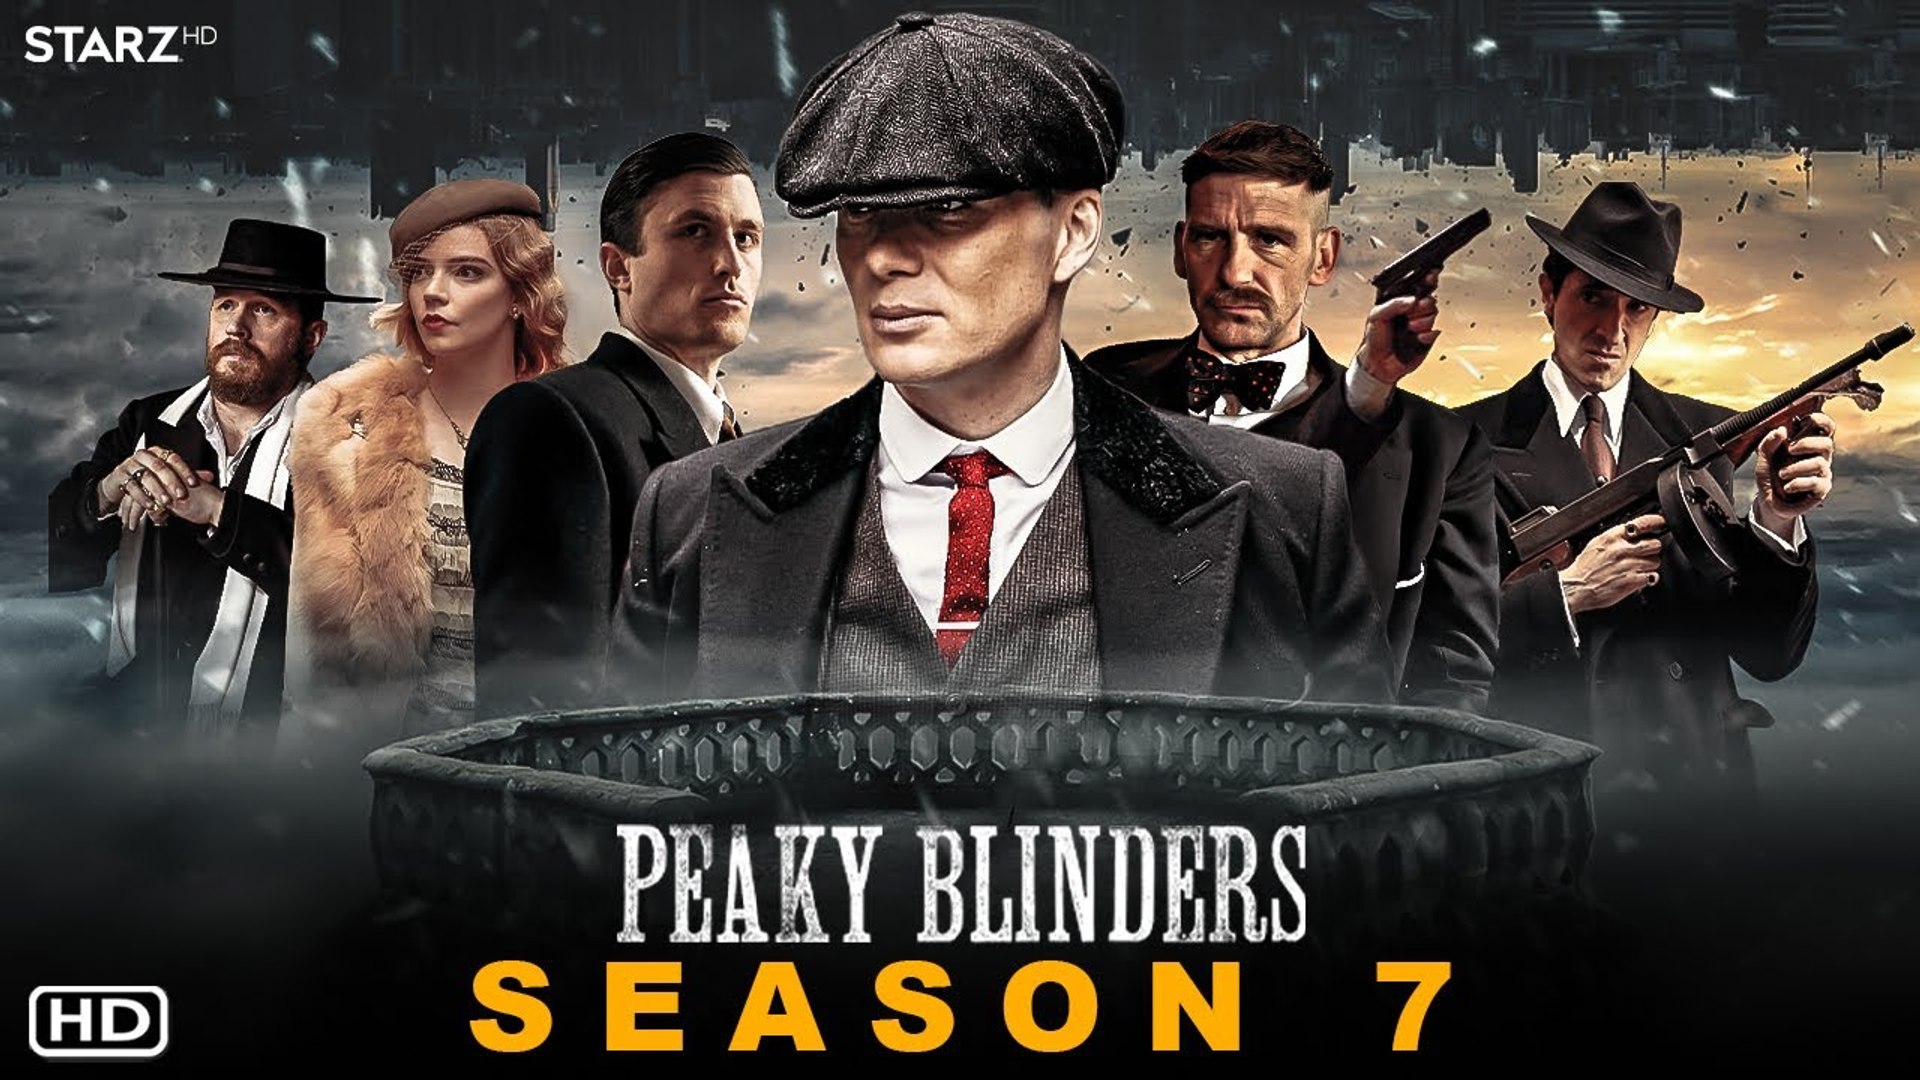 Peaky Blinders Series 1 4 Blu Ray Videomatica Ltd Since 1983 